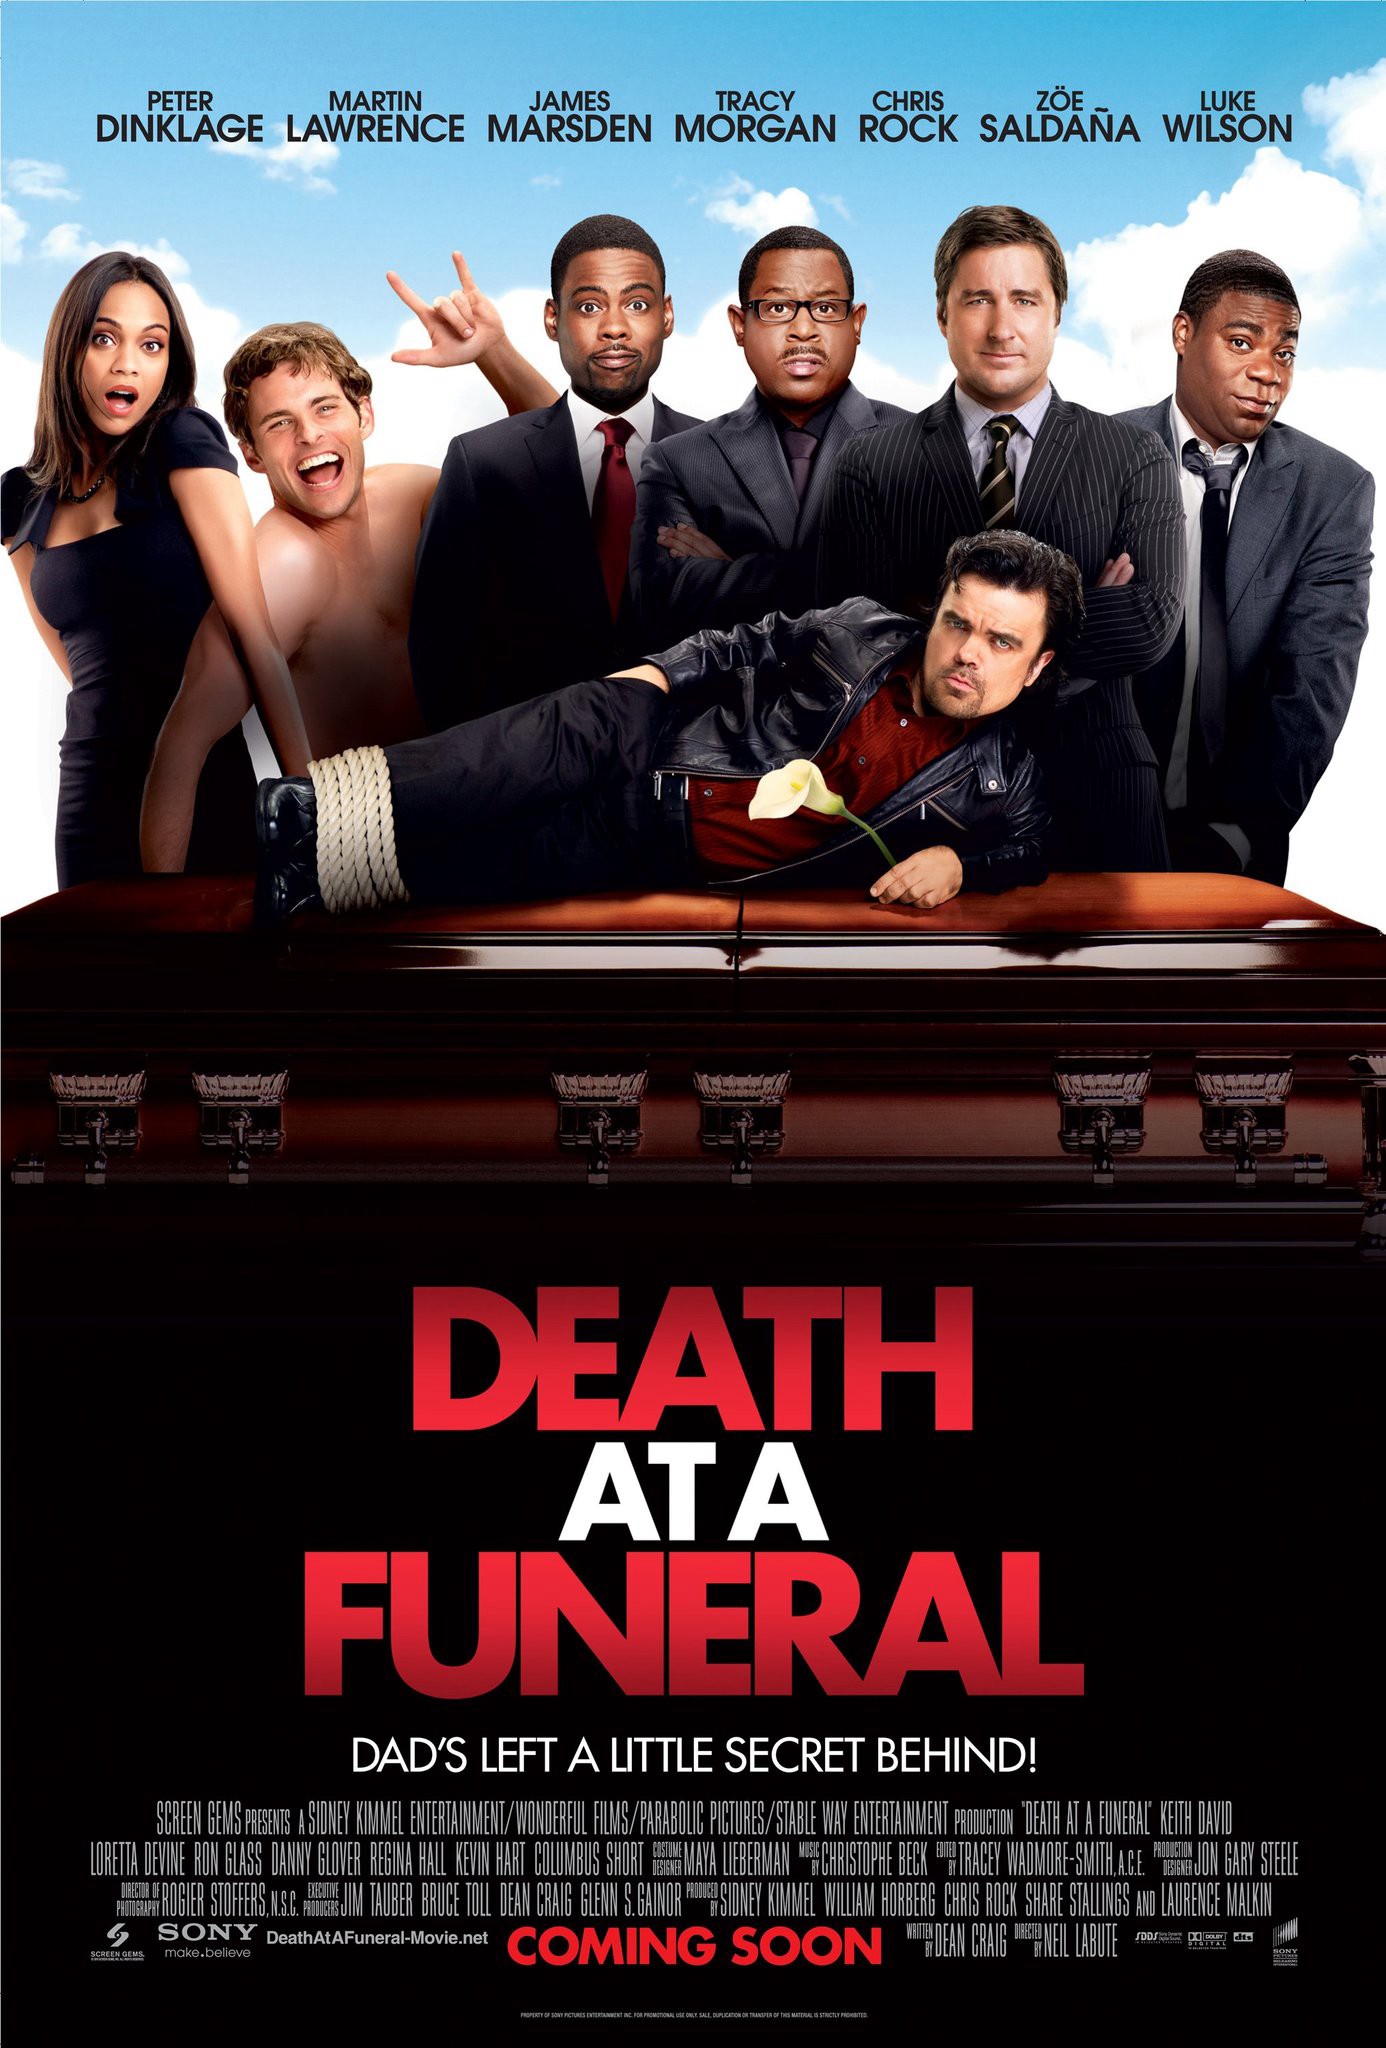 Cái chết trong đám tang - Death at a Funeral (2010)